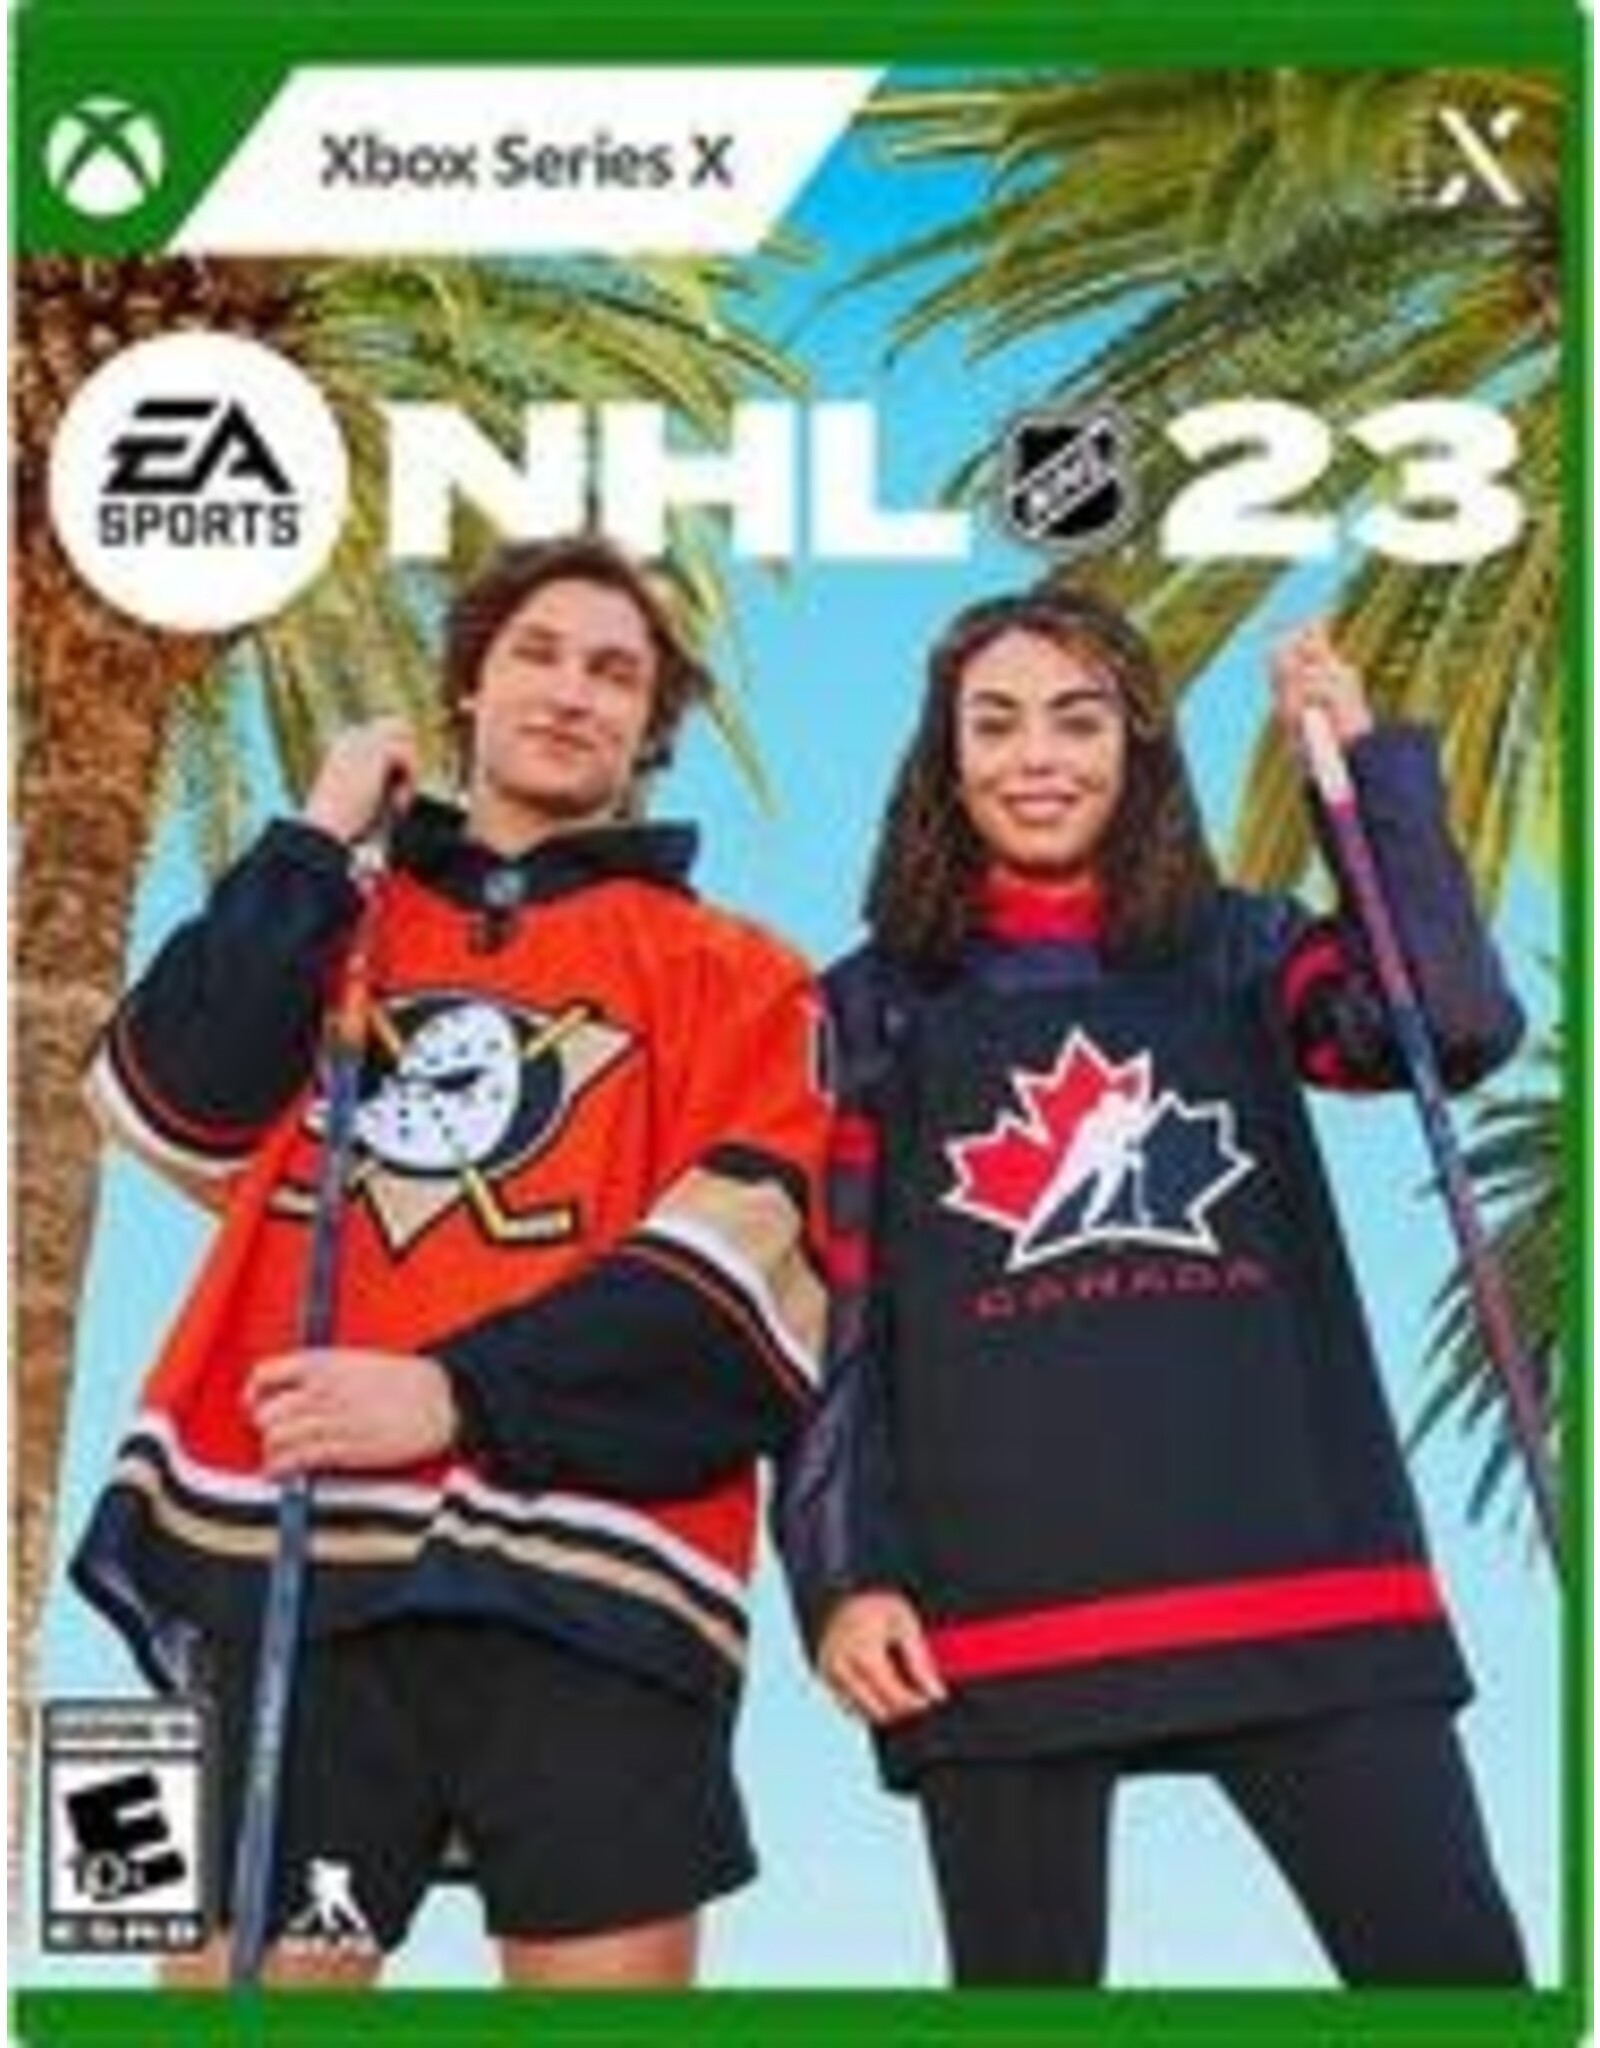 Xbox One NHL 23 (CiB)